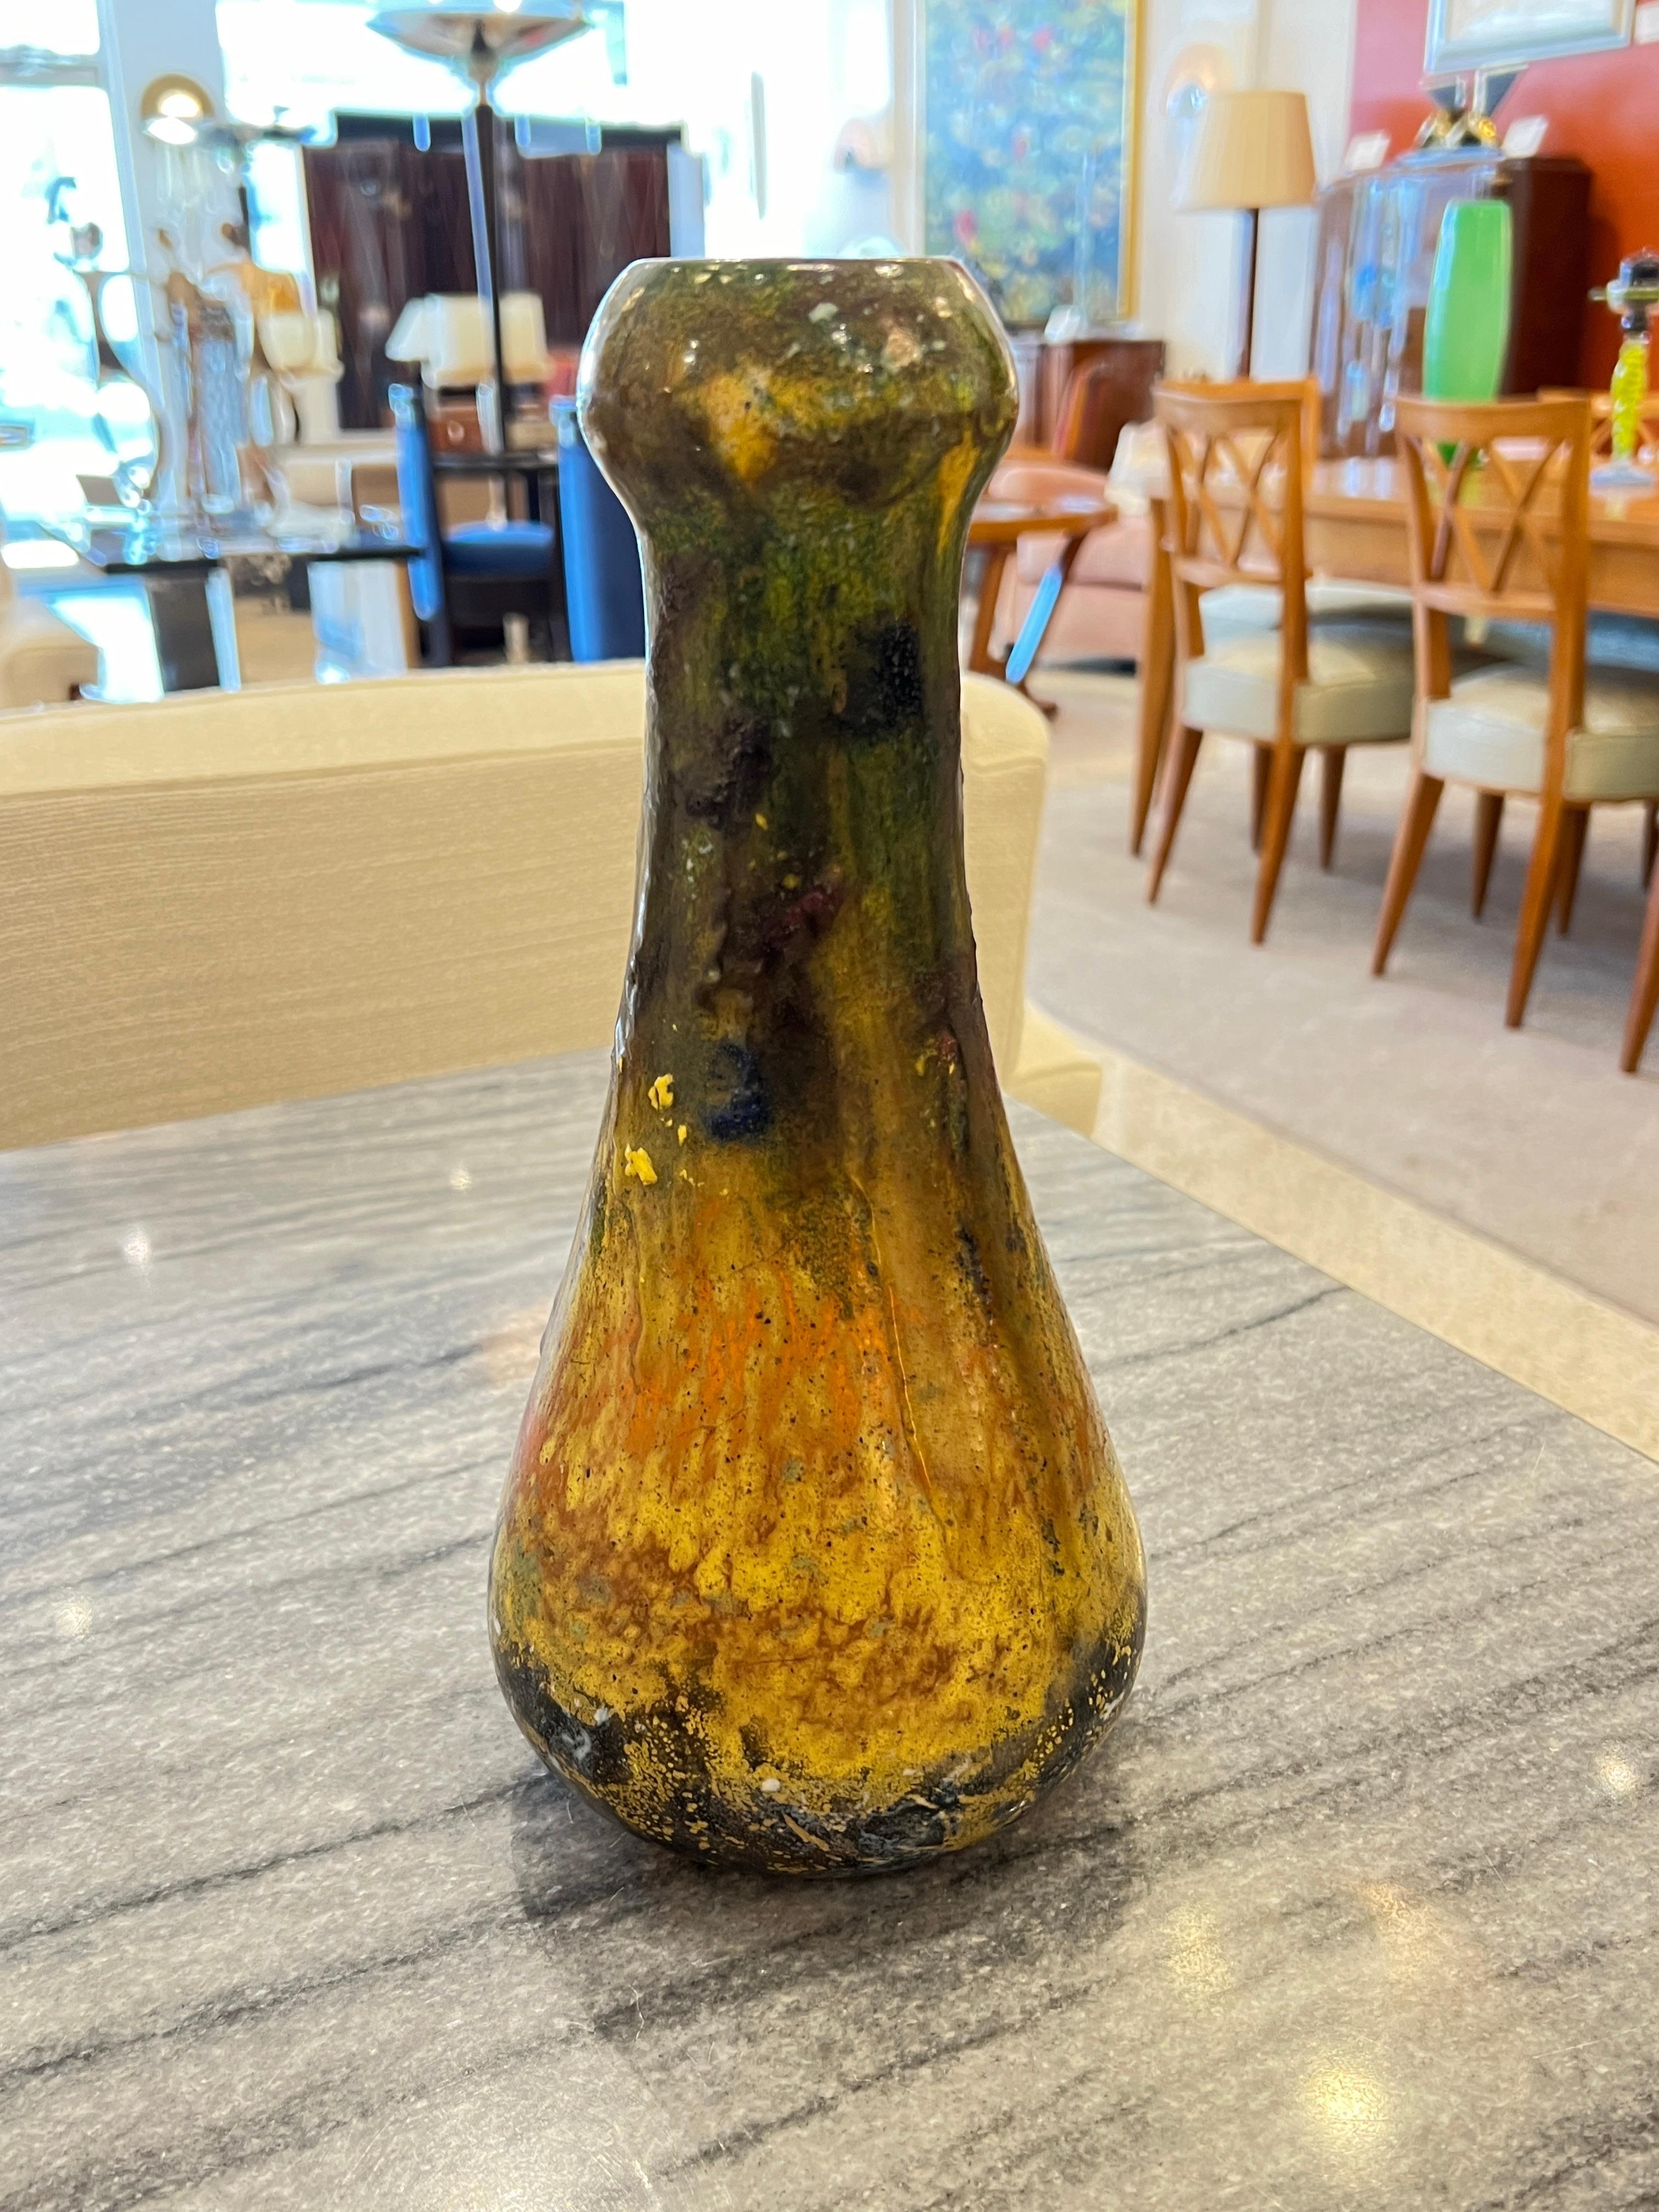 Eine frühe Art-Deco-Vase aus Lava-Glas mit gelben und grünen Schattierungen.

Unterschrift: Schneider